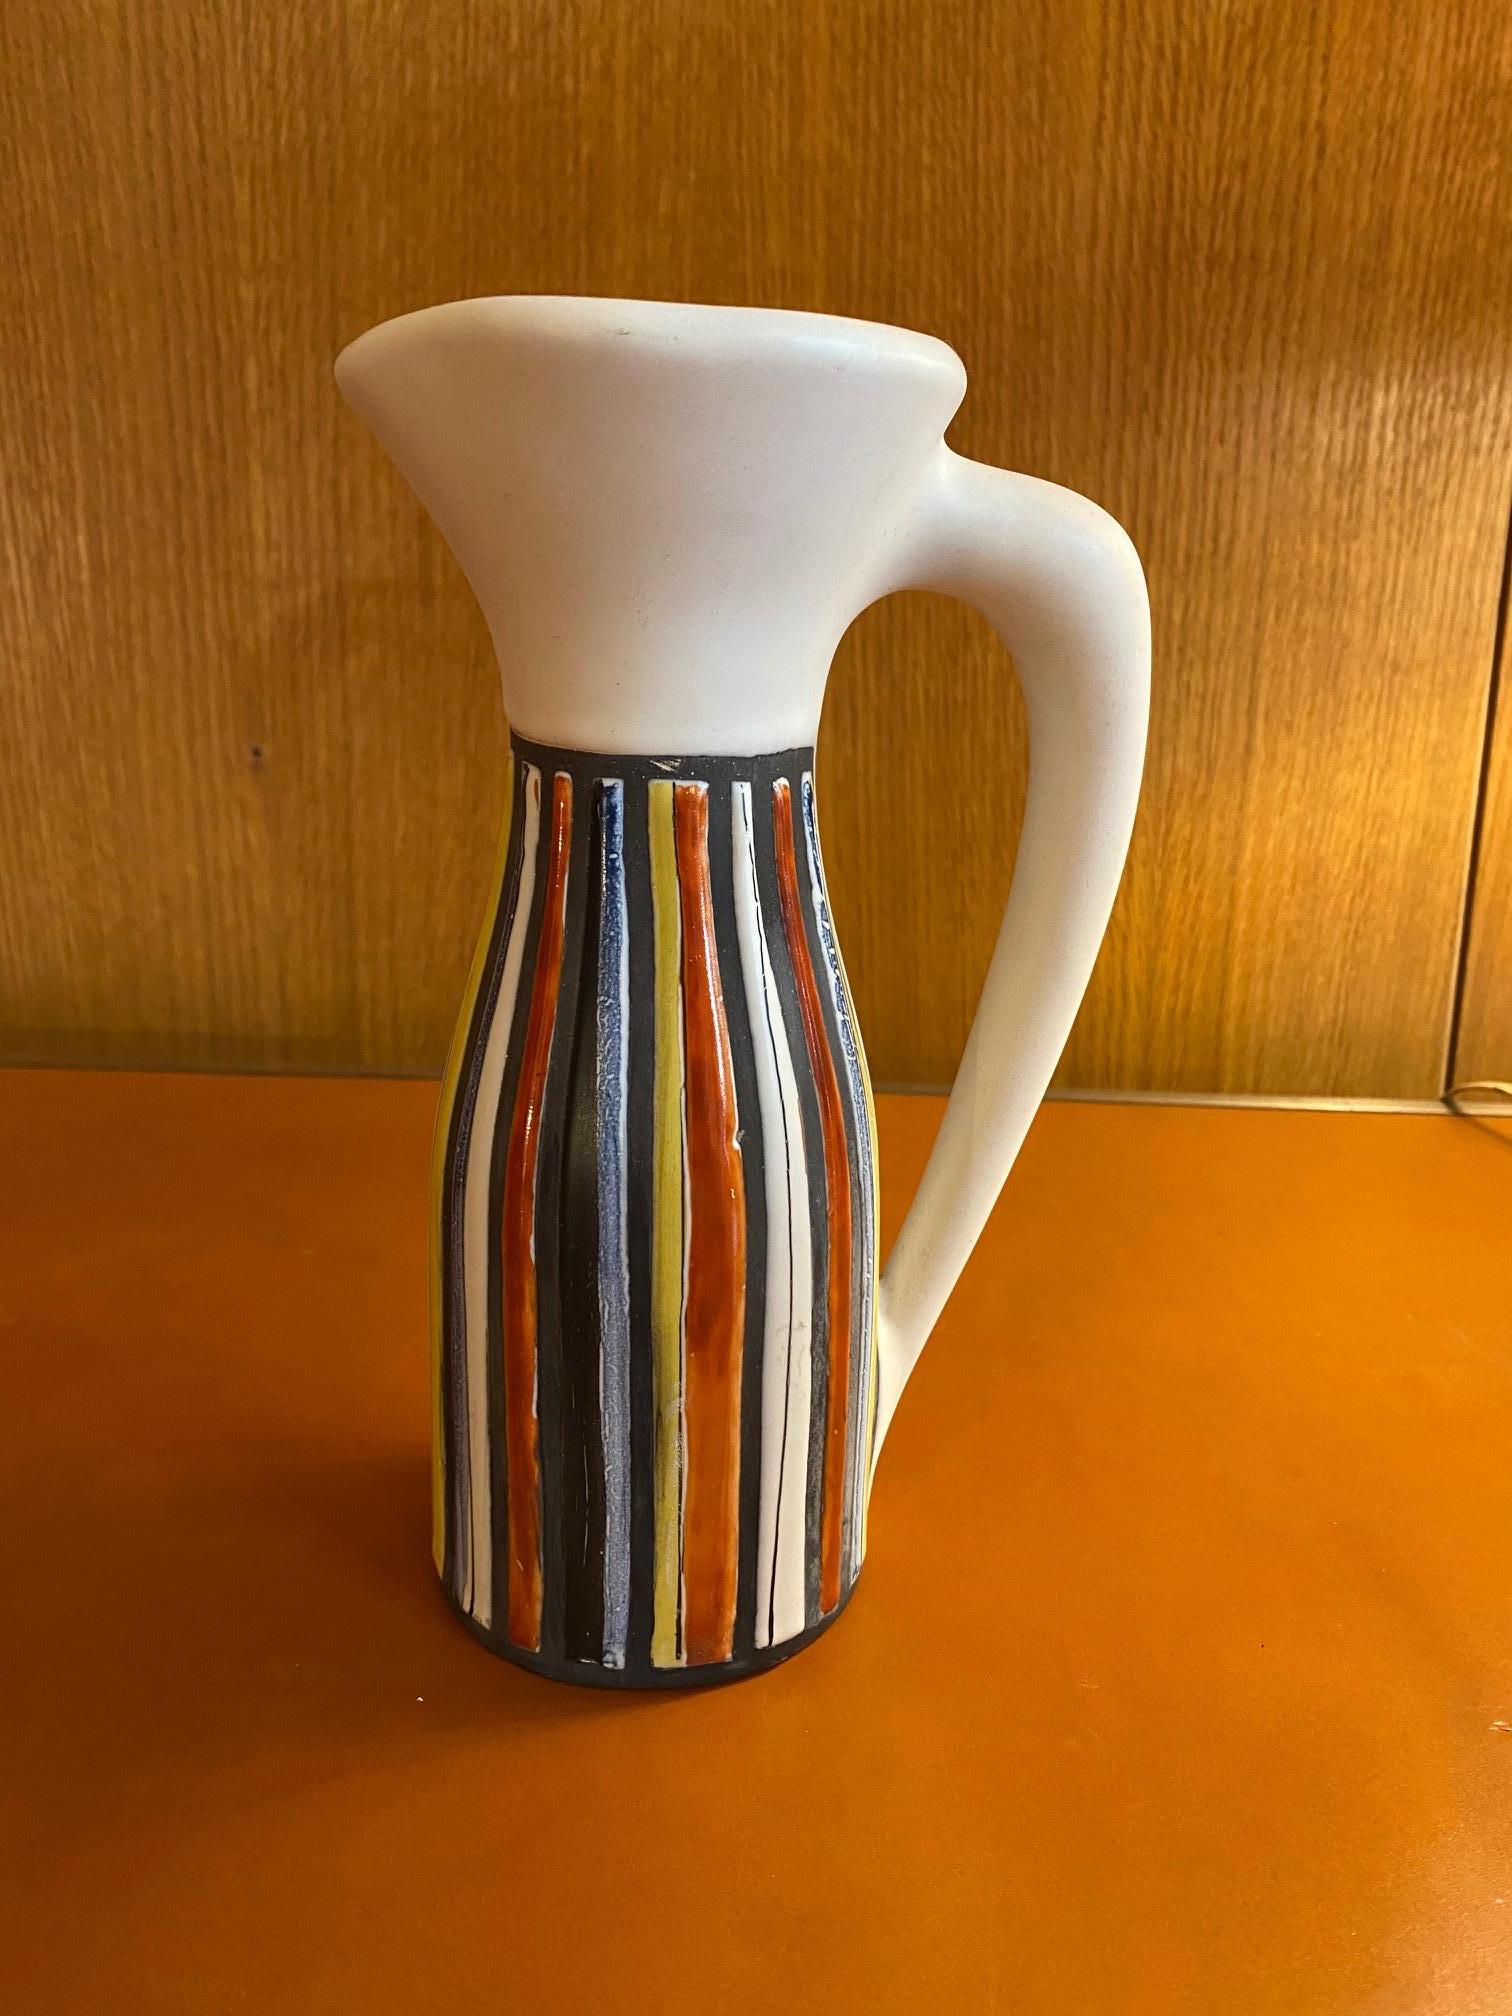 Krug / Vase von Roger Capron, Frankreich, 1960er Jahre
Signiert 